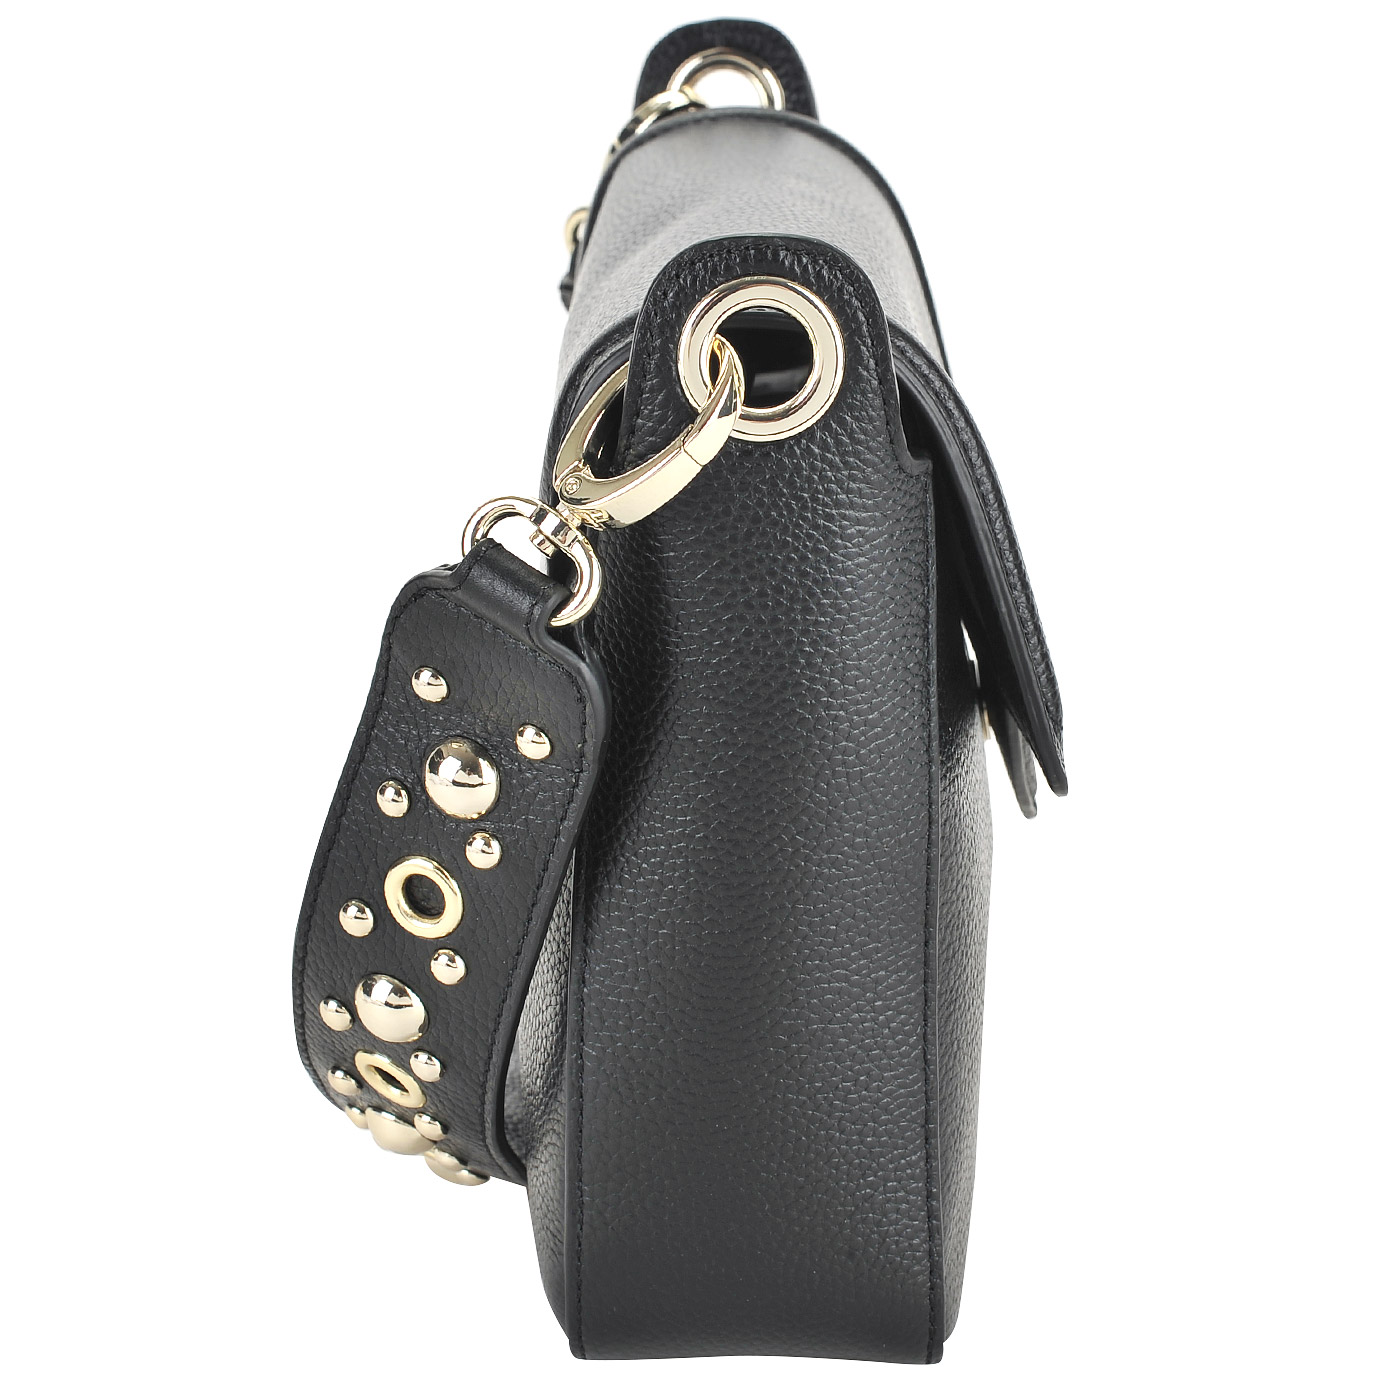 Черная сумка с откидным клапаном и логотипом бренда Love Moschino Heart  and  studs